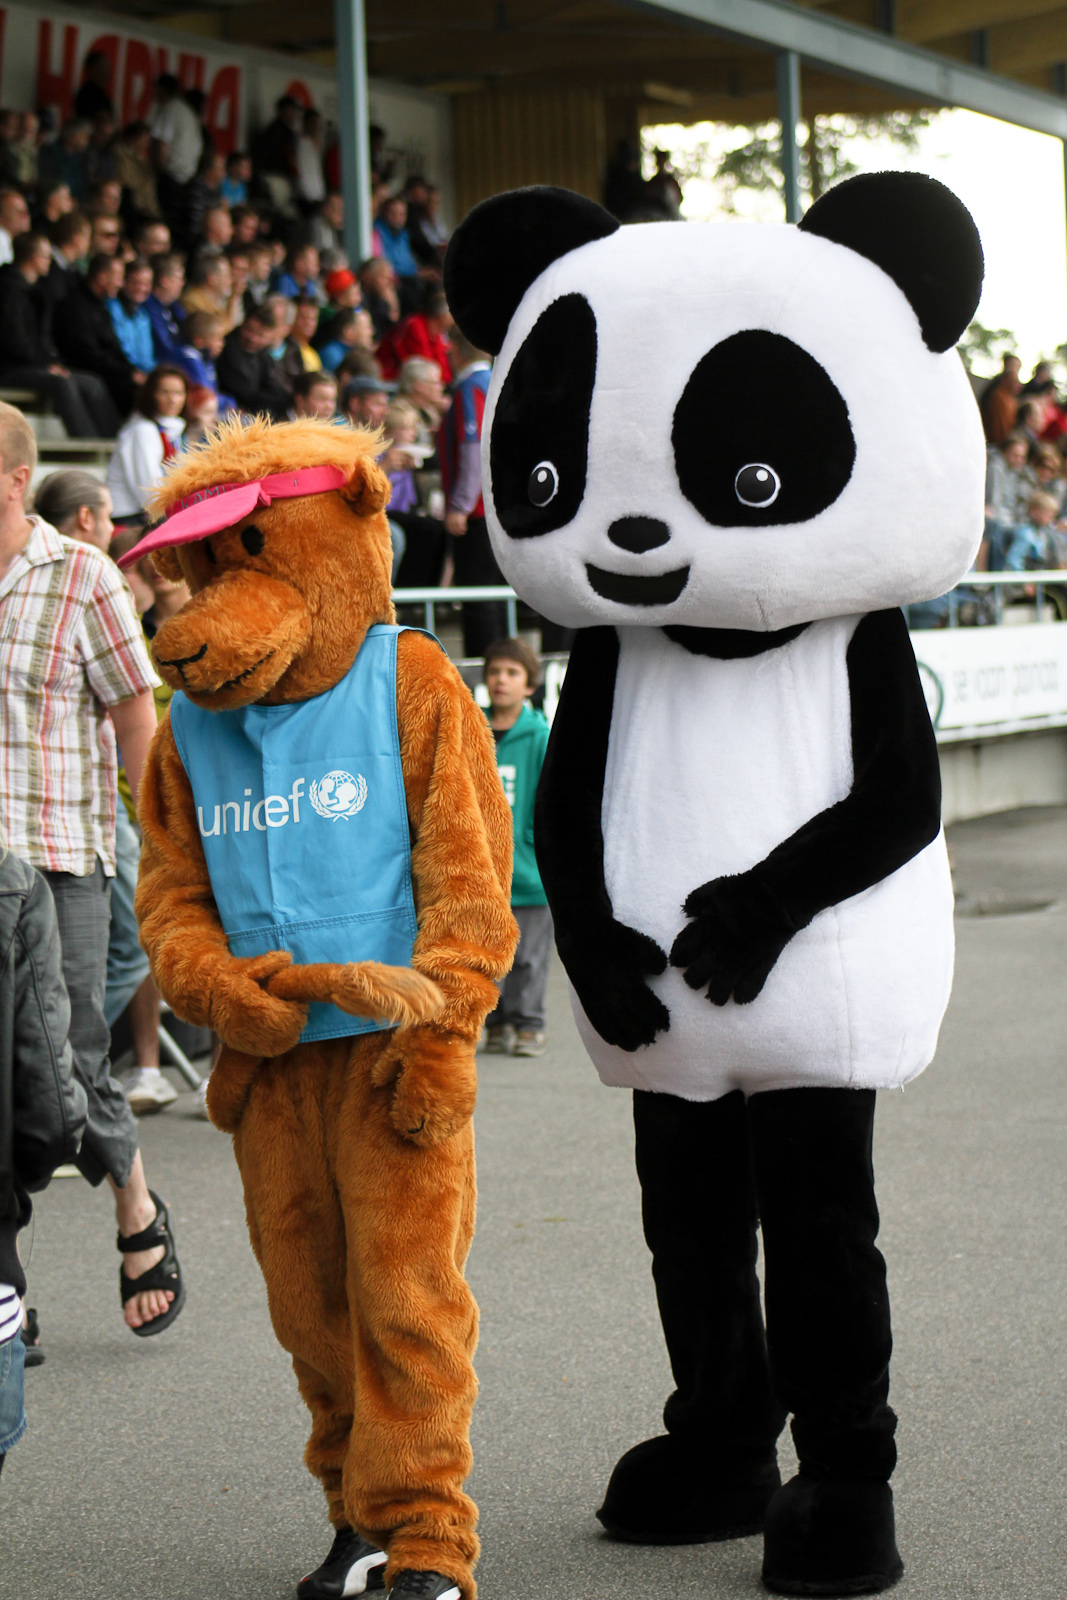 UNICEFin Kamu Kameli ja Panda pitivät yhtä.